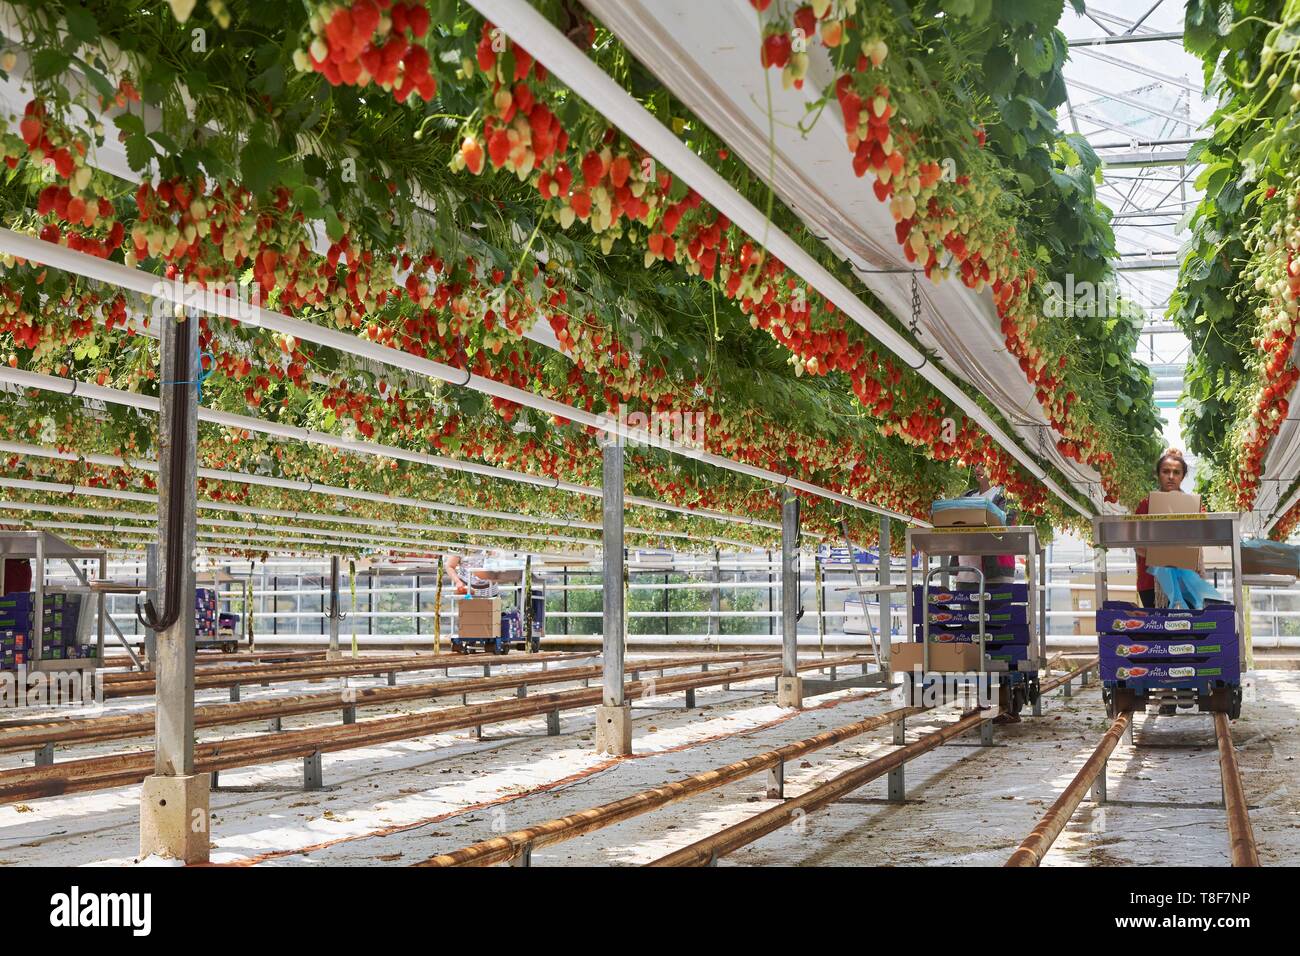 La France, Finistère, Plougastel Daoulas, récolte de fraises Gariguette en culture hors-sol Banque D'Images